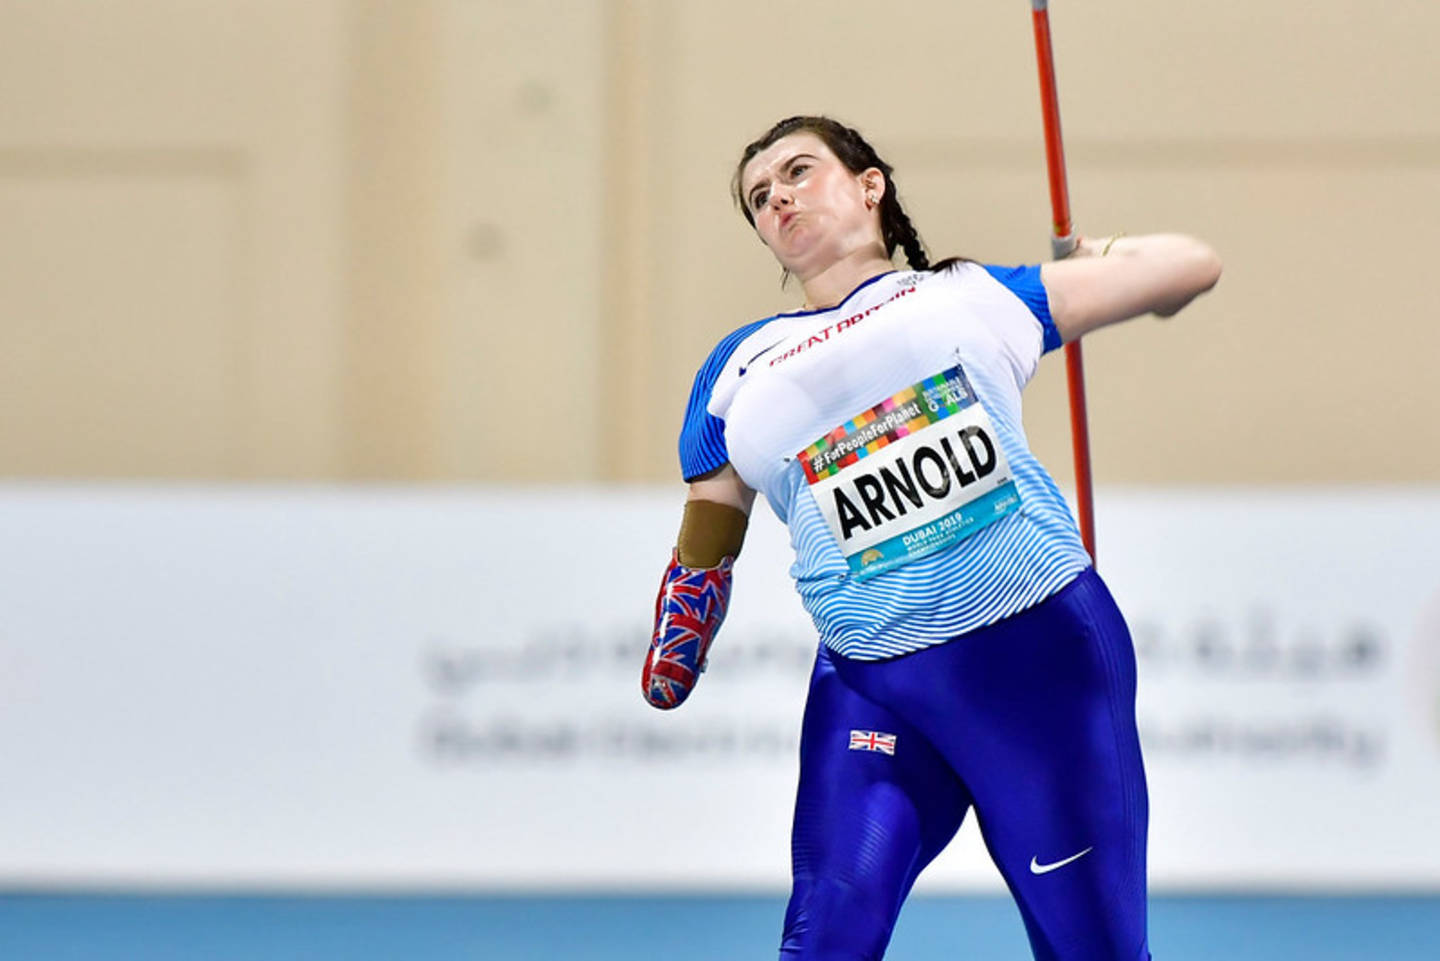 Holly Arnold throwing javelin at World Para Athletics Championships 2019 
